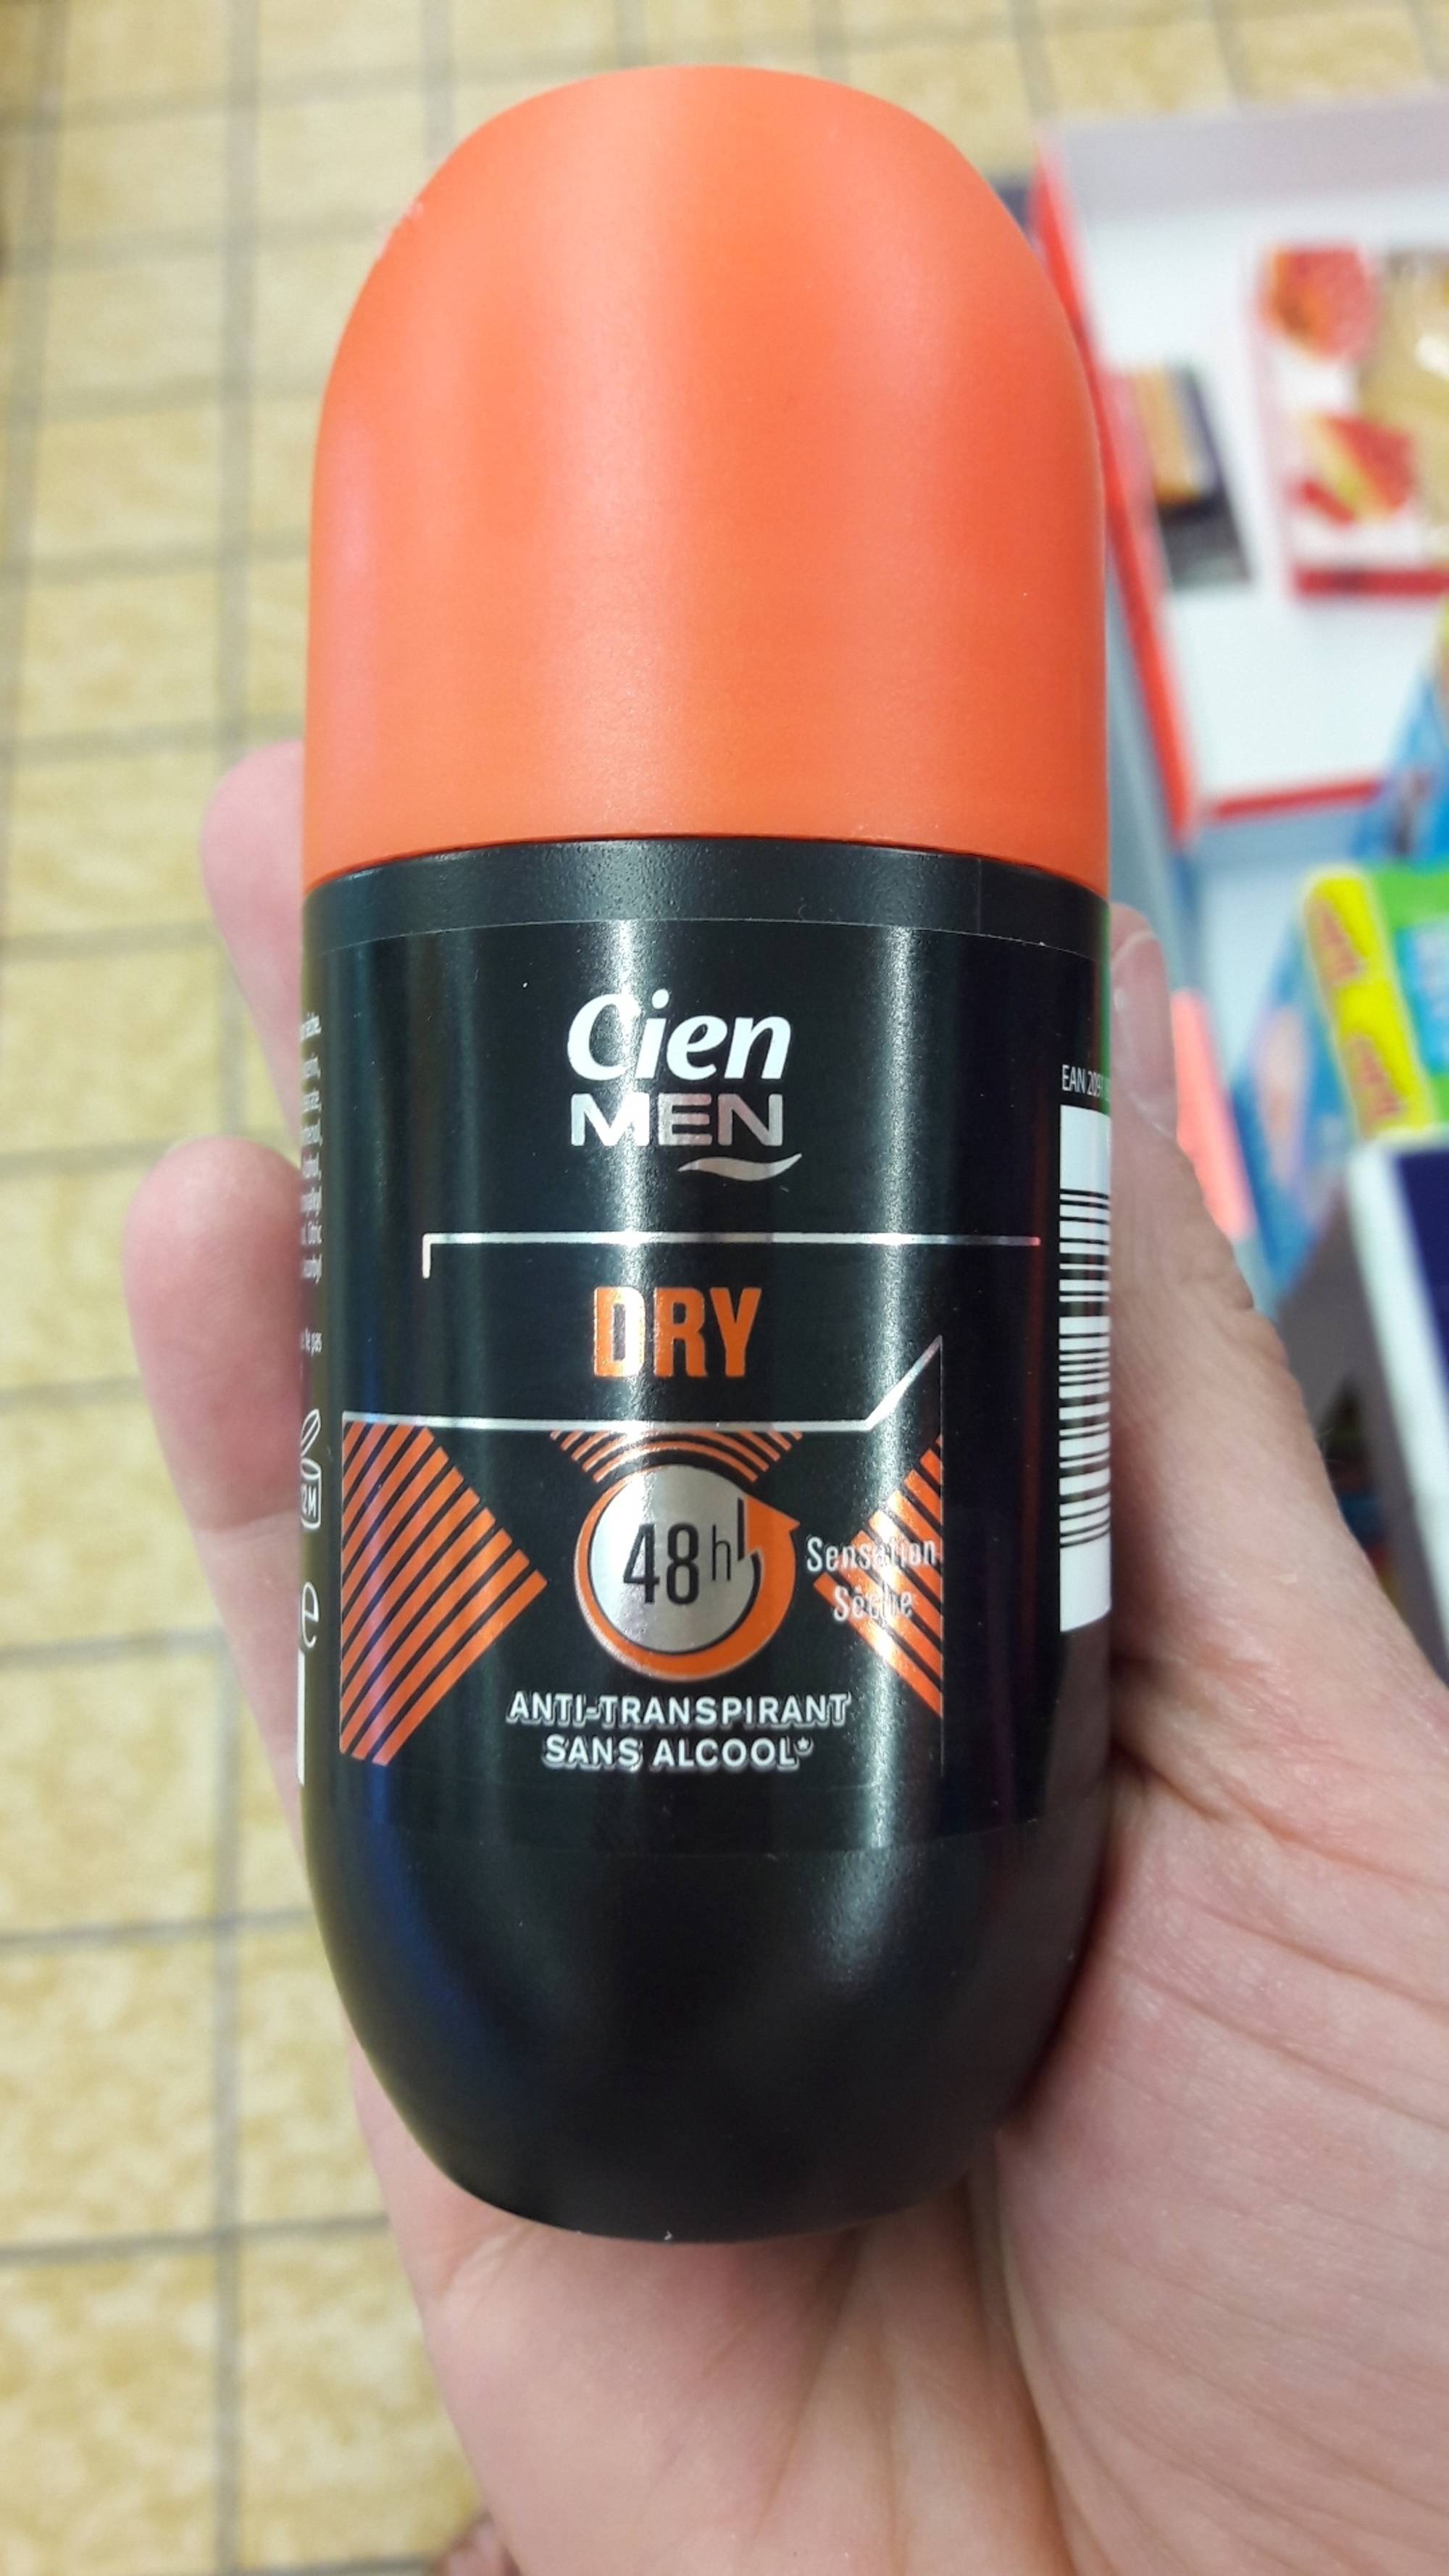 CIEN - Dry - Déodorant men 48h